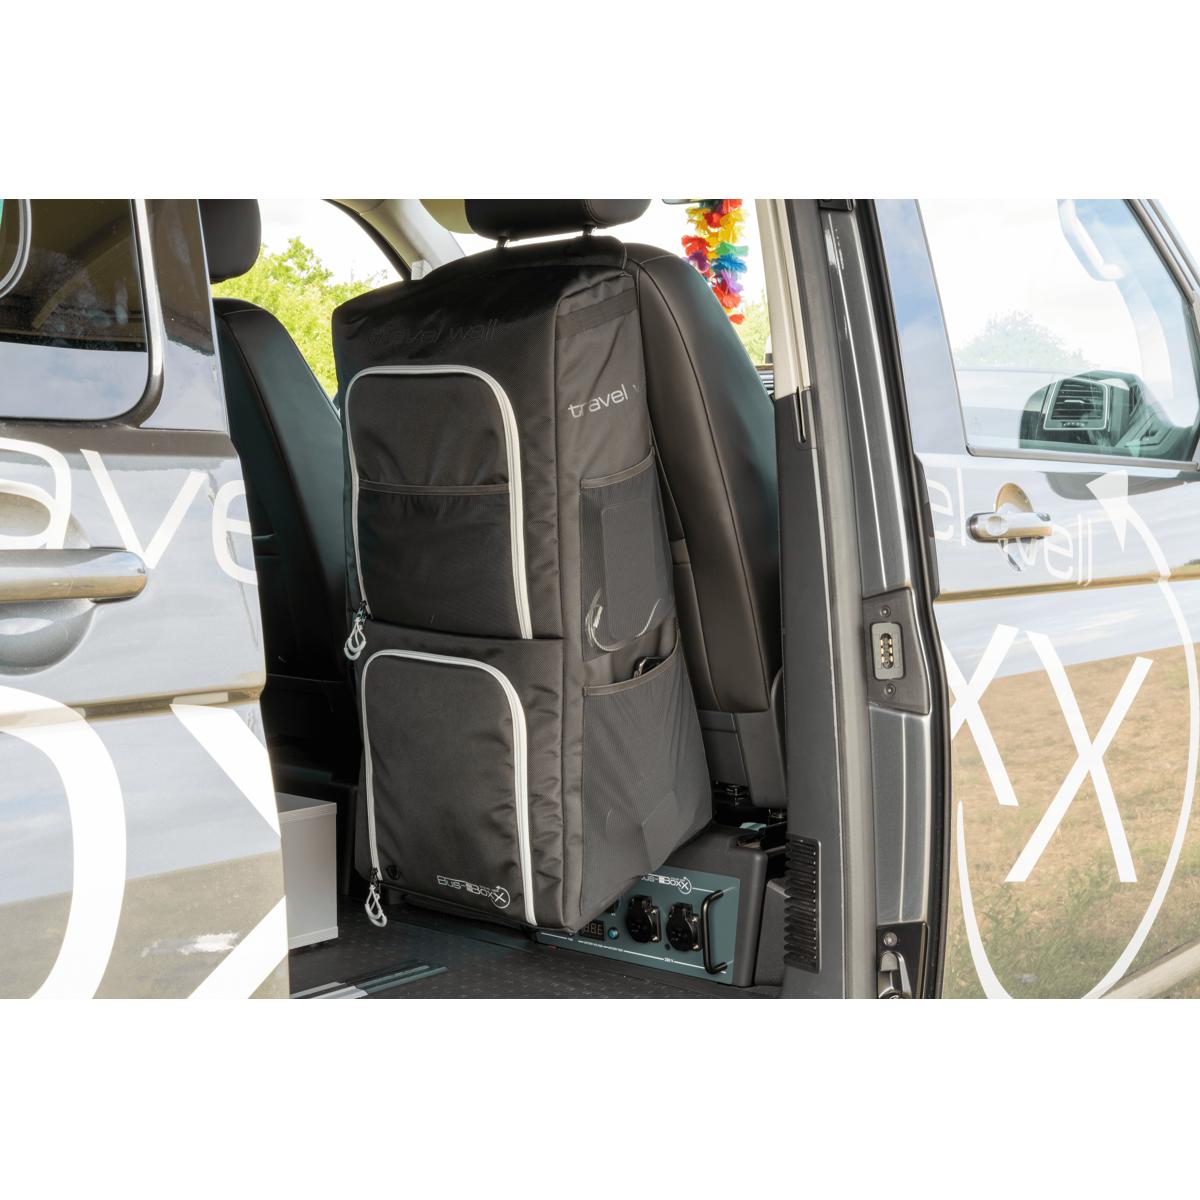 Bus-Boxx seatBOXX Utensilientasche für VW T5/T6 bei Camping Wagner